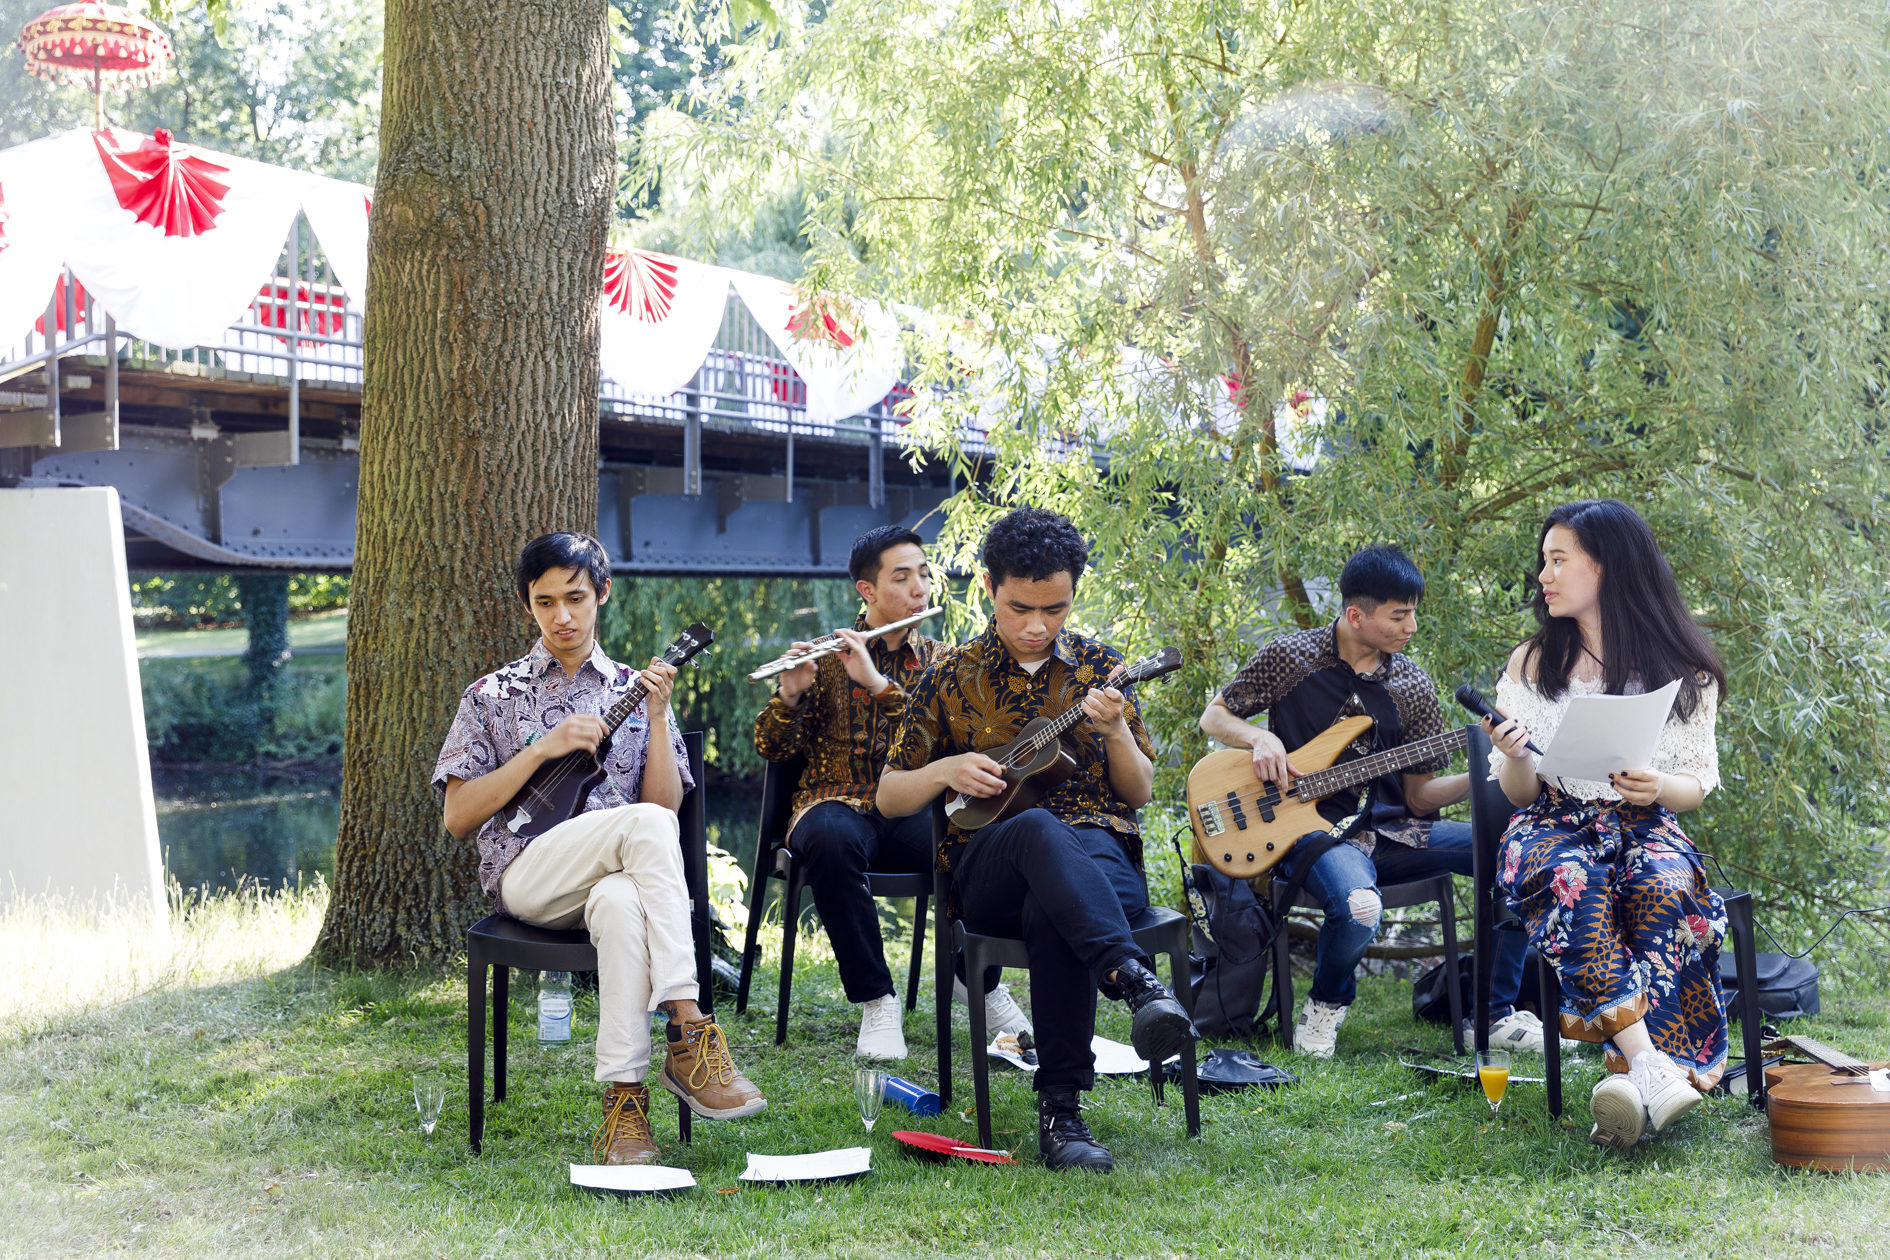 Die Musikgruppe spielt traditionelle indonesische Kroncong-Musik (Wird bei Klick vergrößert)